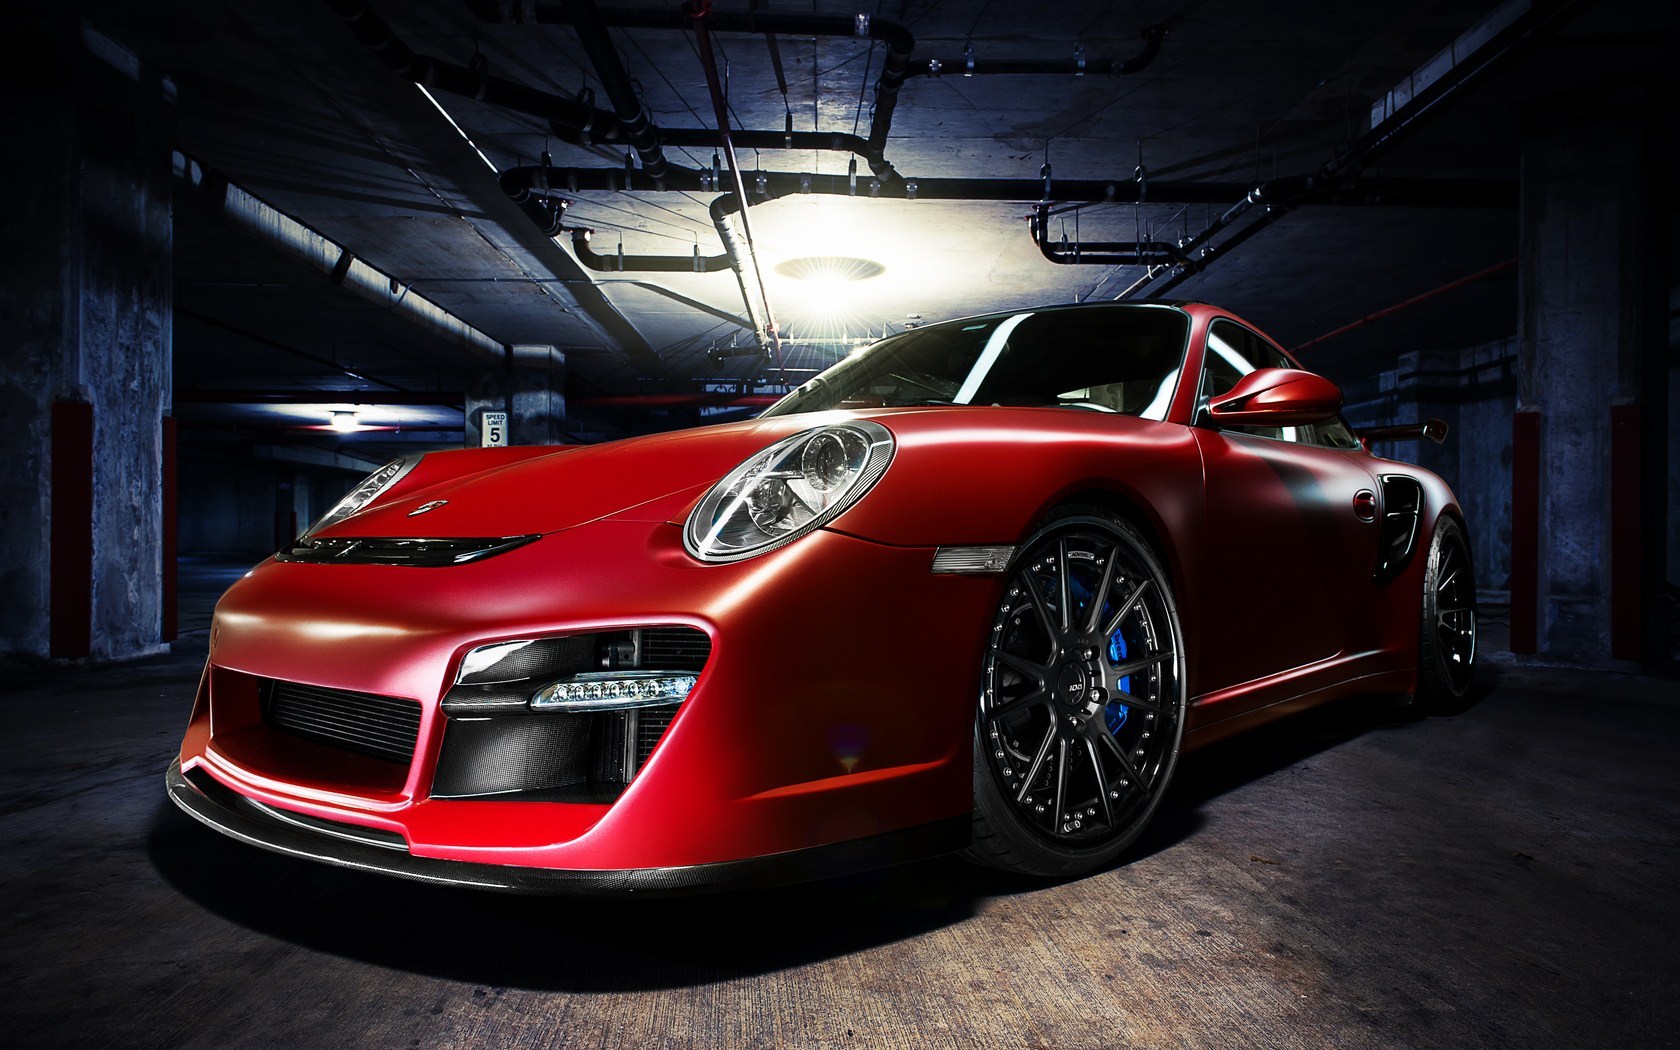 Porsche 911 Turbo Red Car Garage Photo